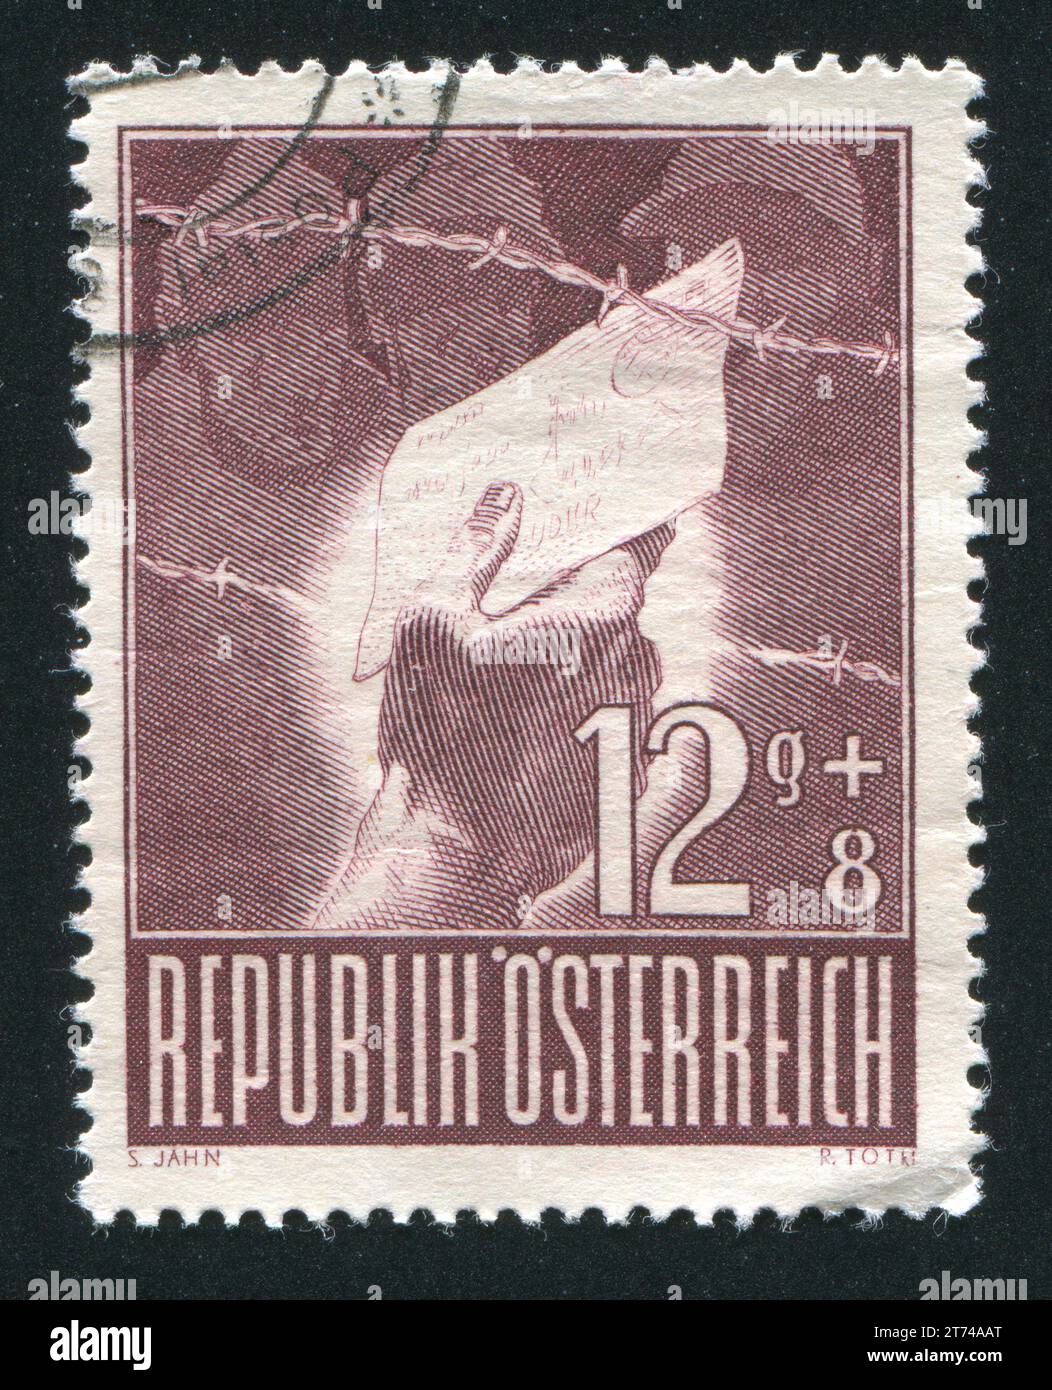 ÖSTERREICH - CA. 1947: Briefmarke von Österreich, zeigt Gefängnisbesucher, ca. 1947 Stockfoto